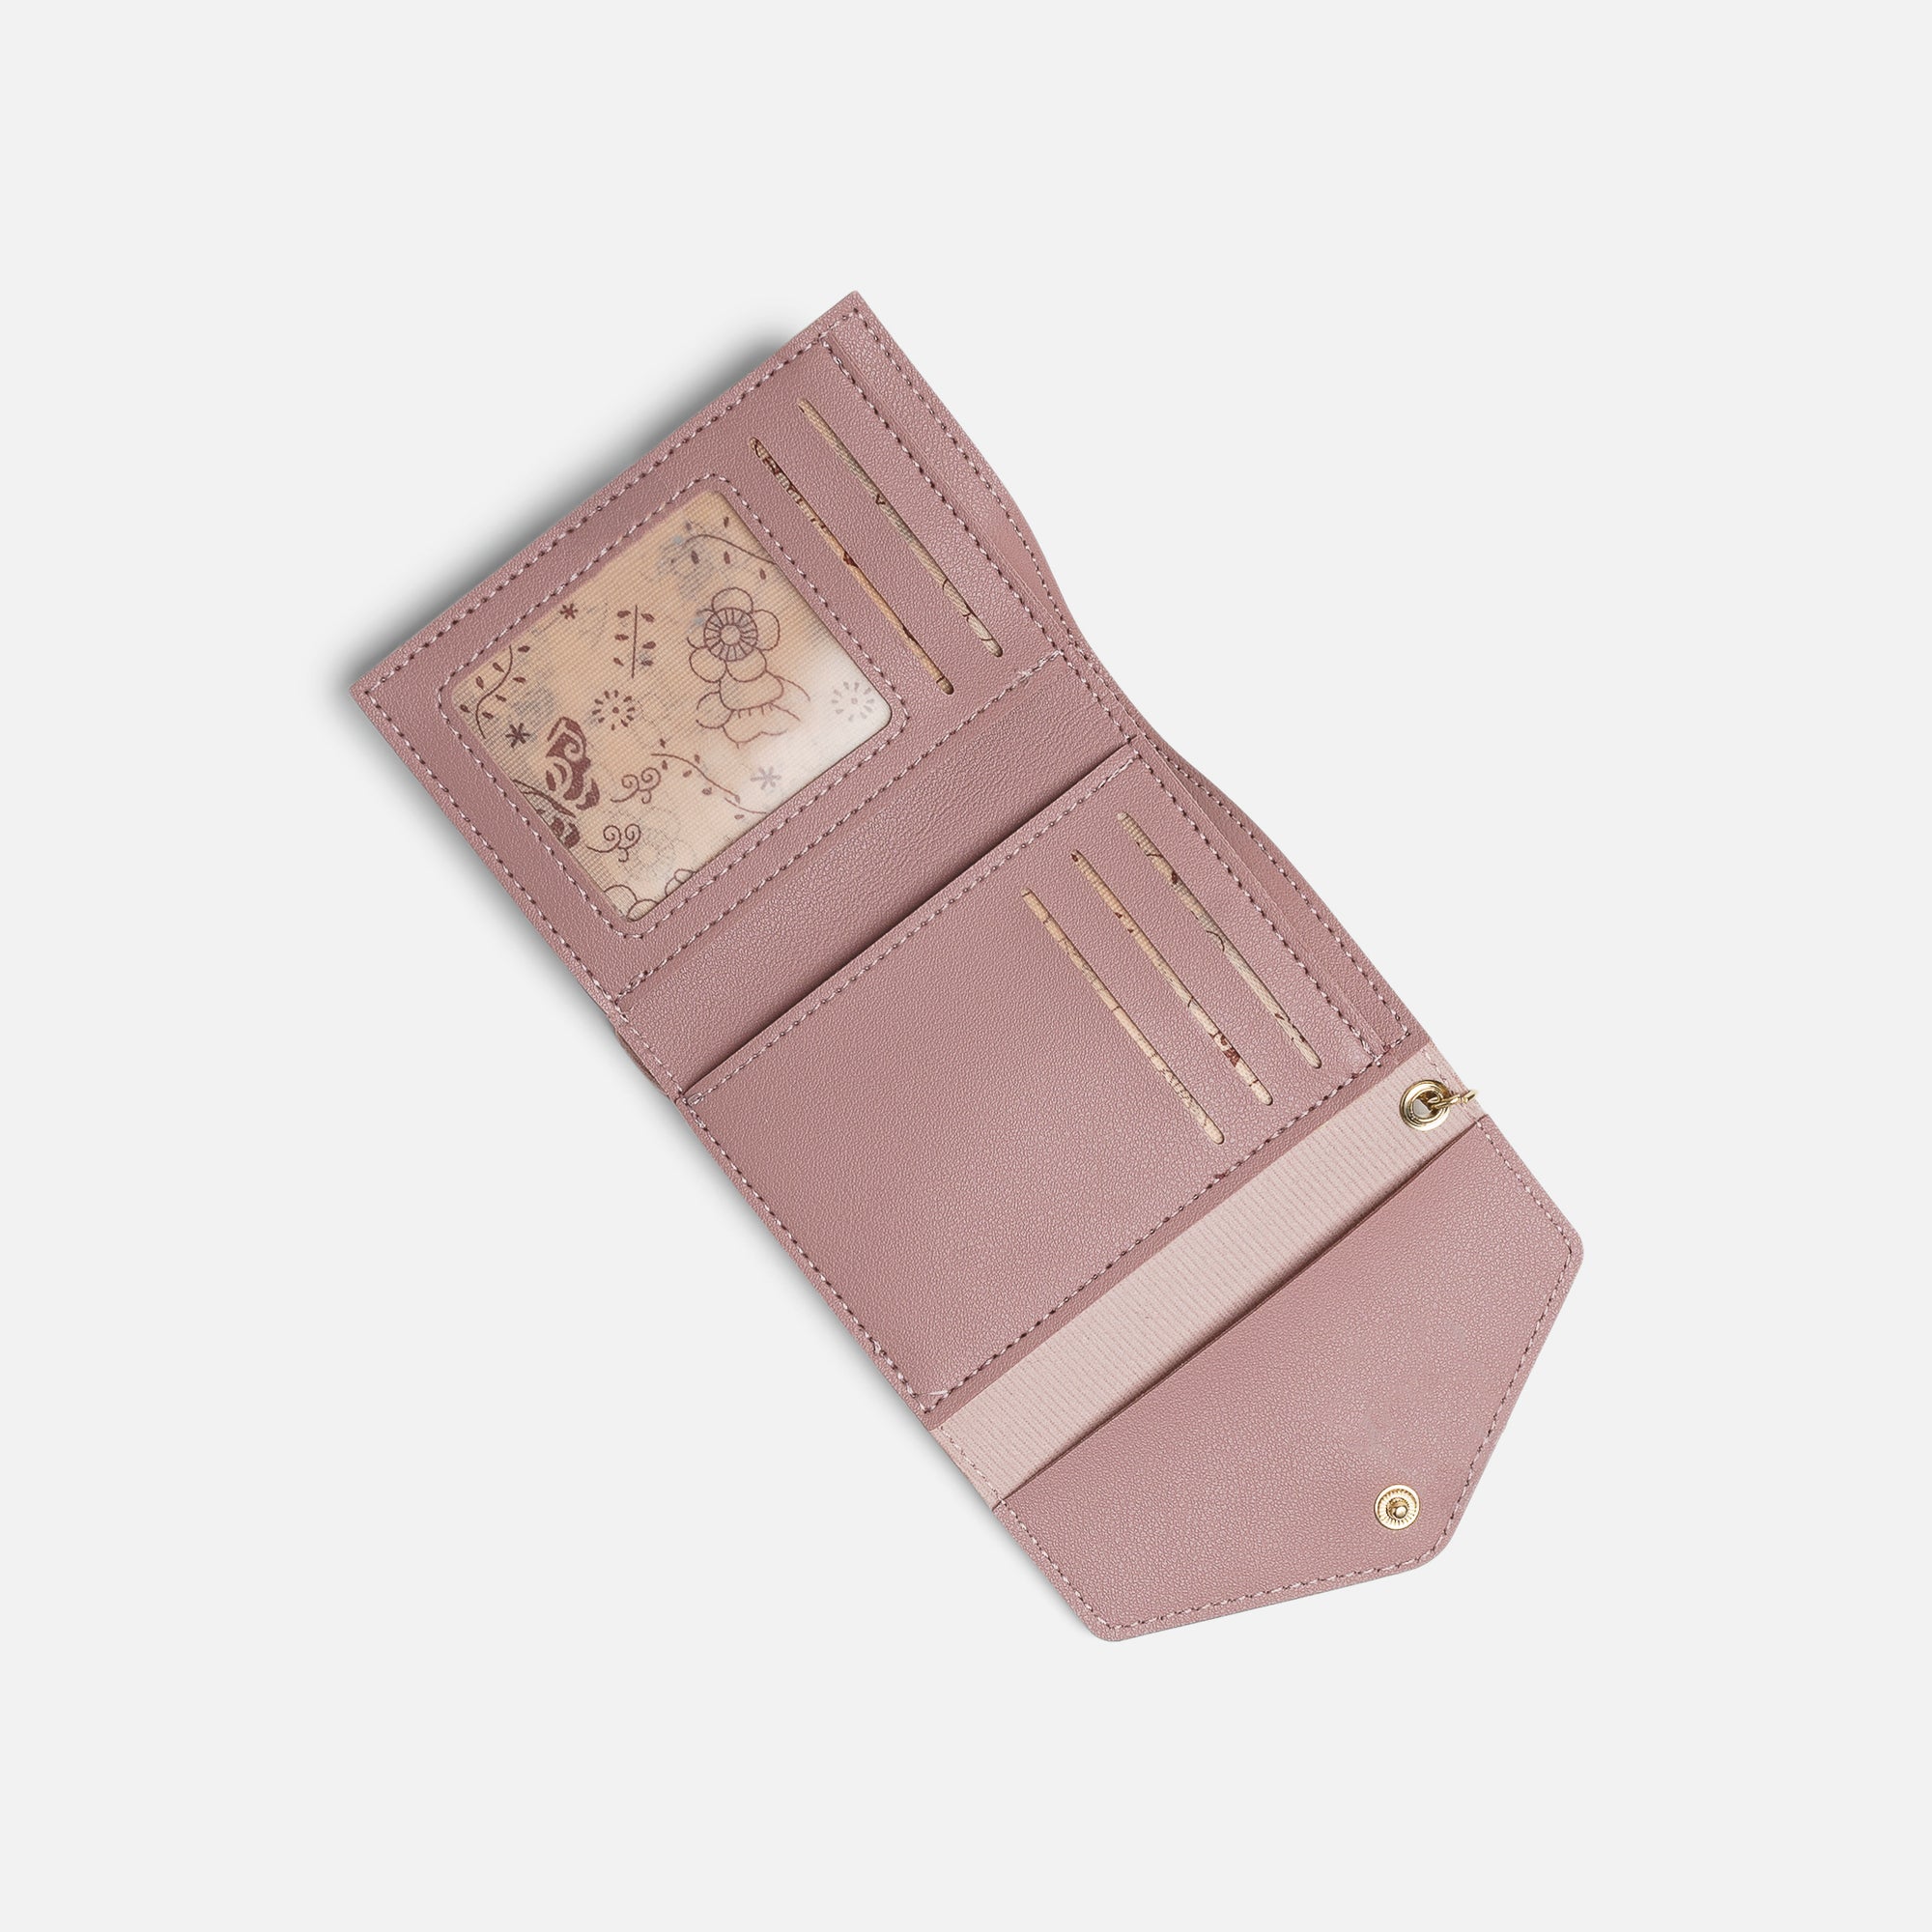 Dark pink flap wallet with braided design